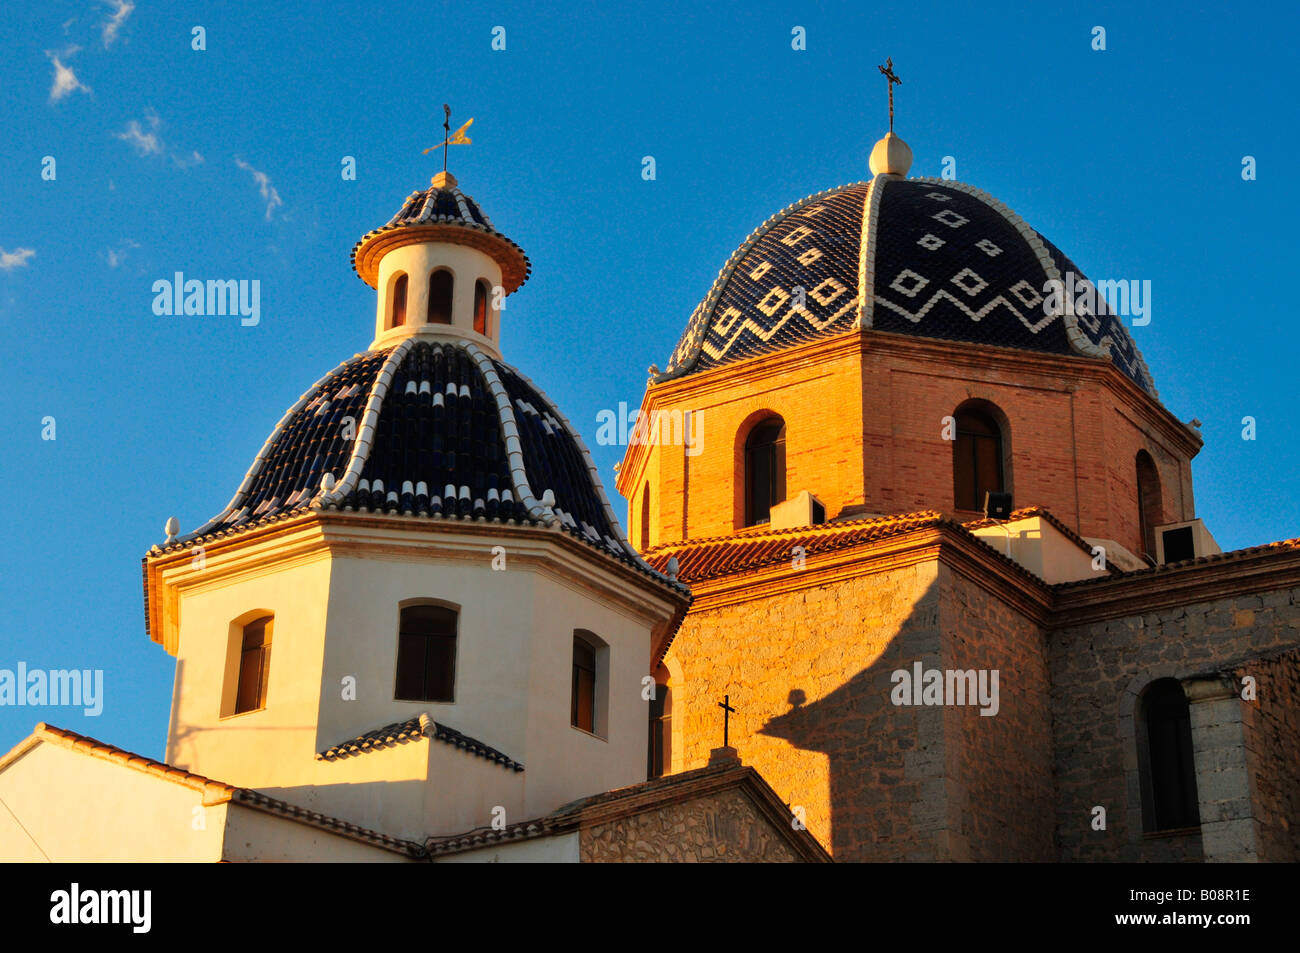 Tiled domes of the golden yellow Iglesia de Nuestra Señora del Consuelo Church, Altea, Costa Blanca, Spain Stock Photo